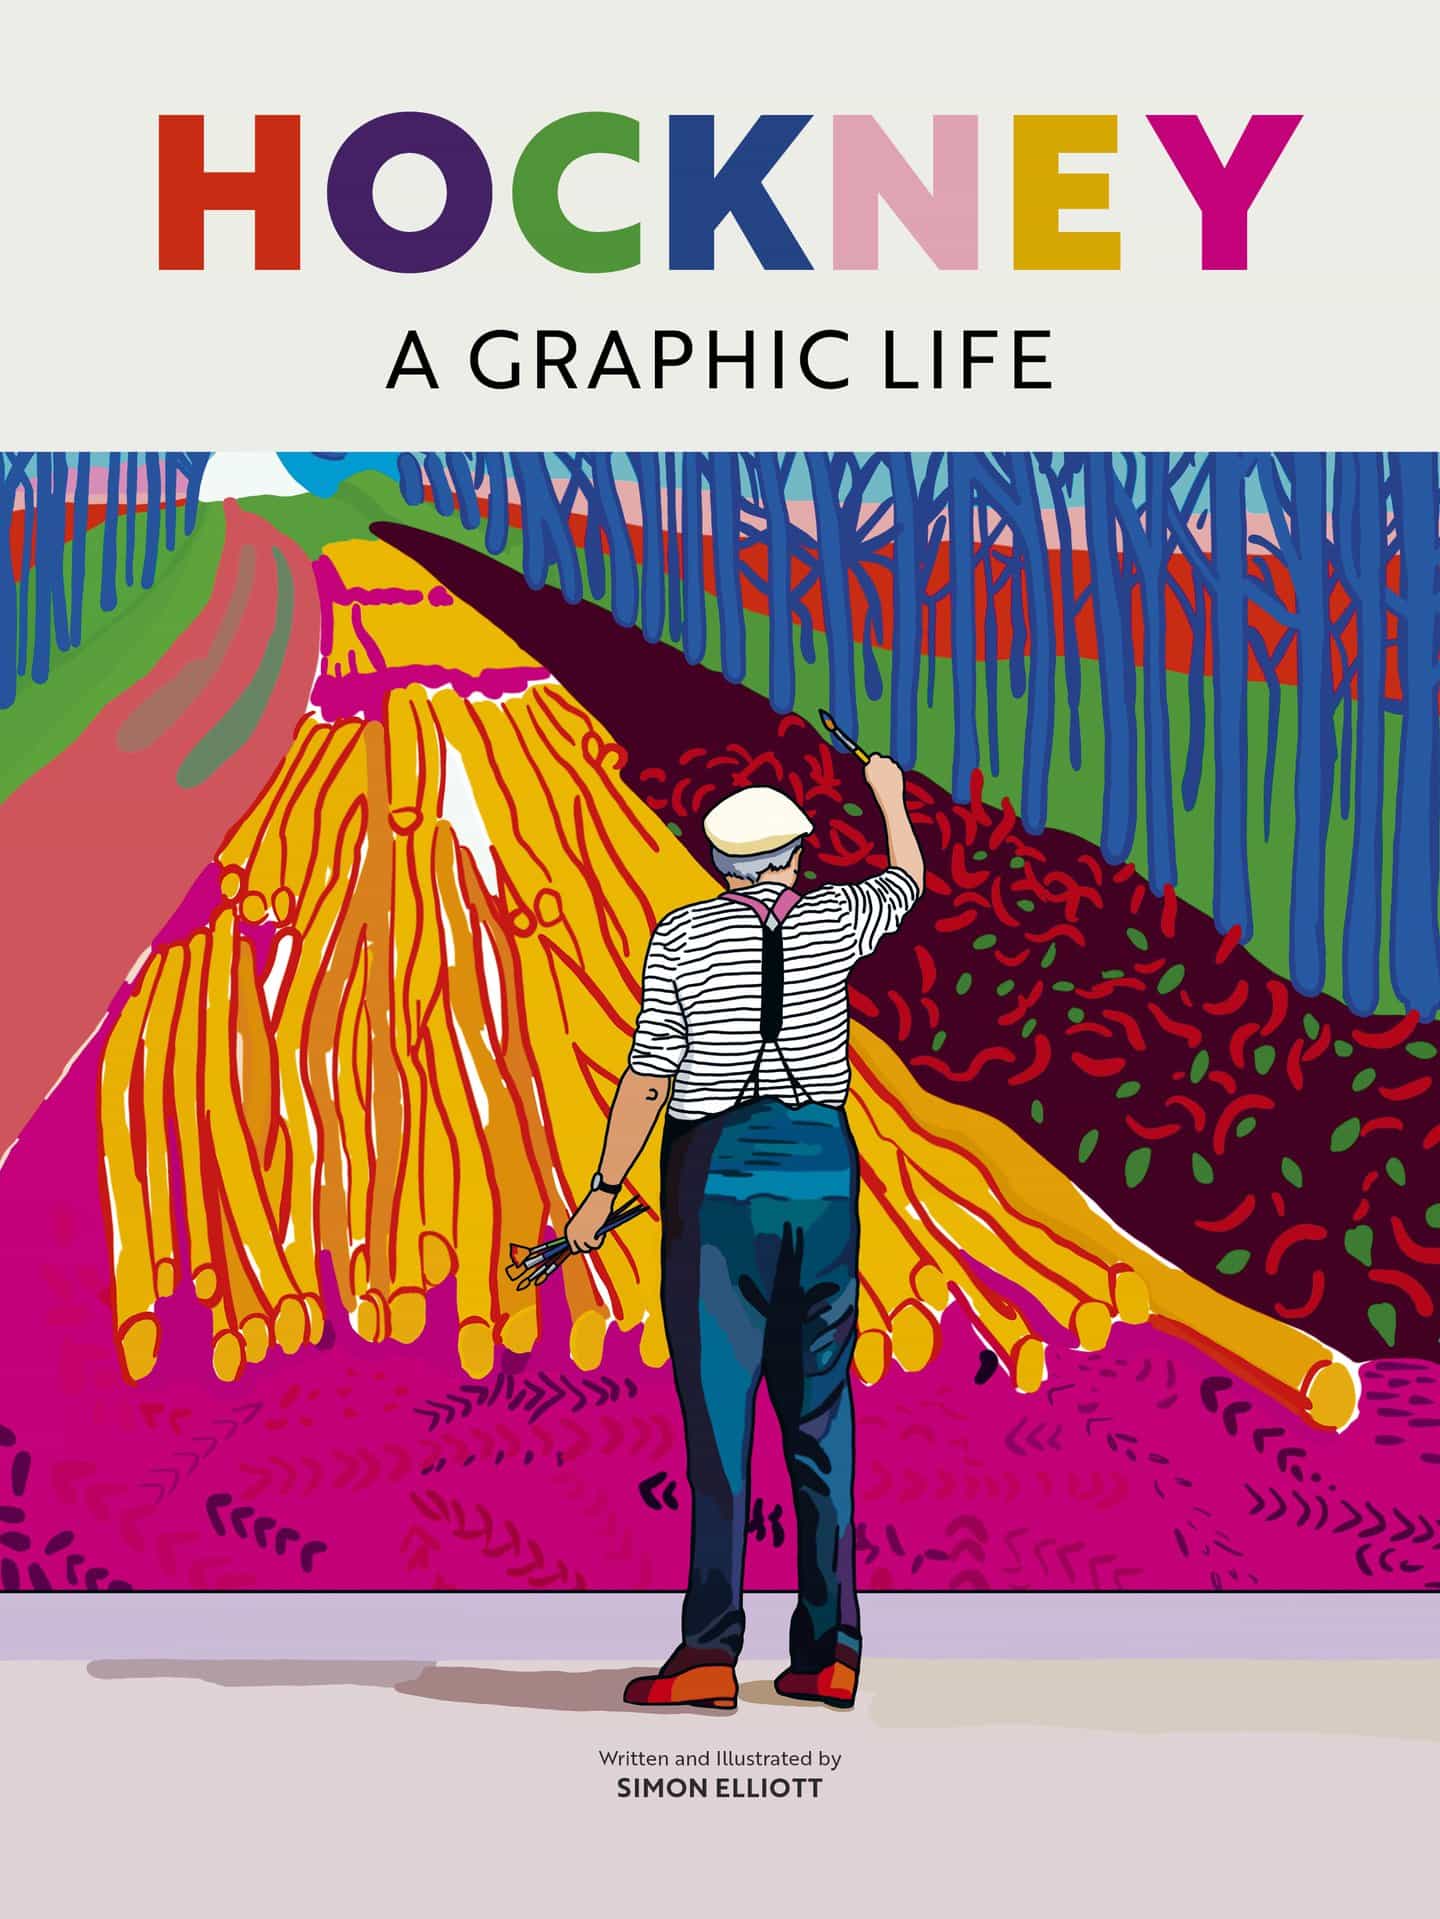 Simon Elliott ilustra la vida de Hockney a través de décadas y estilos